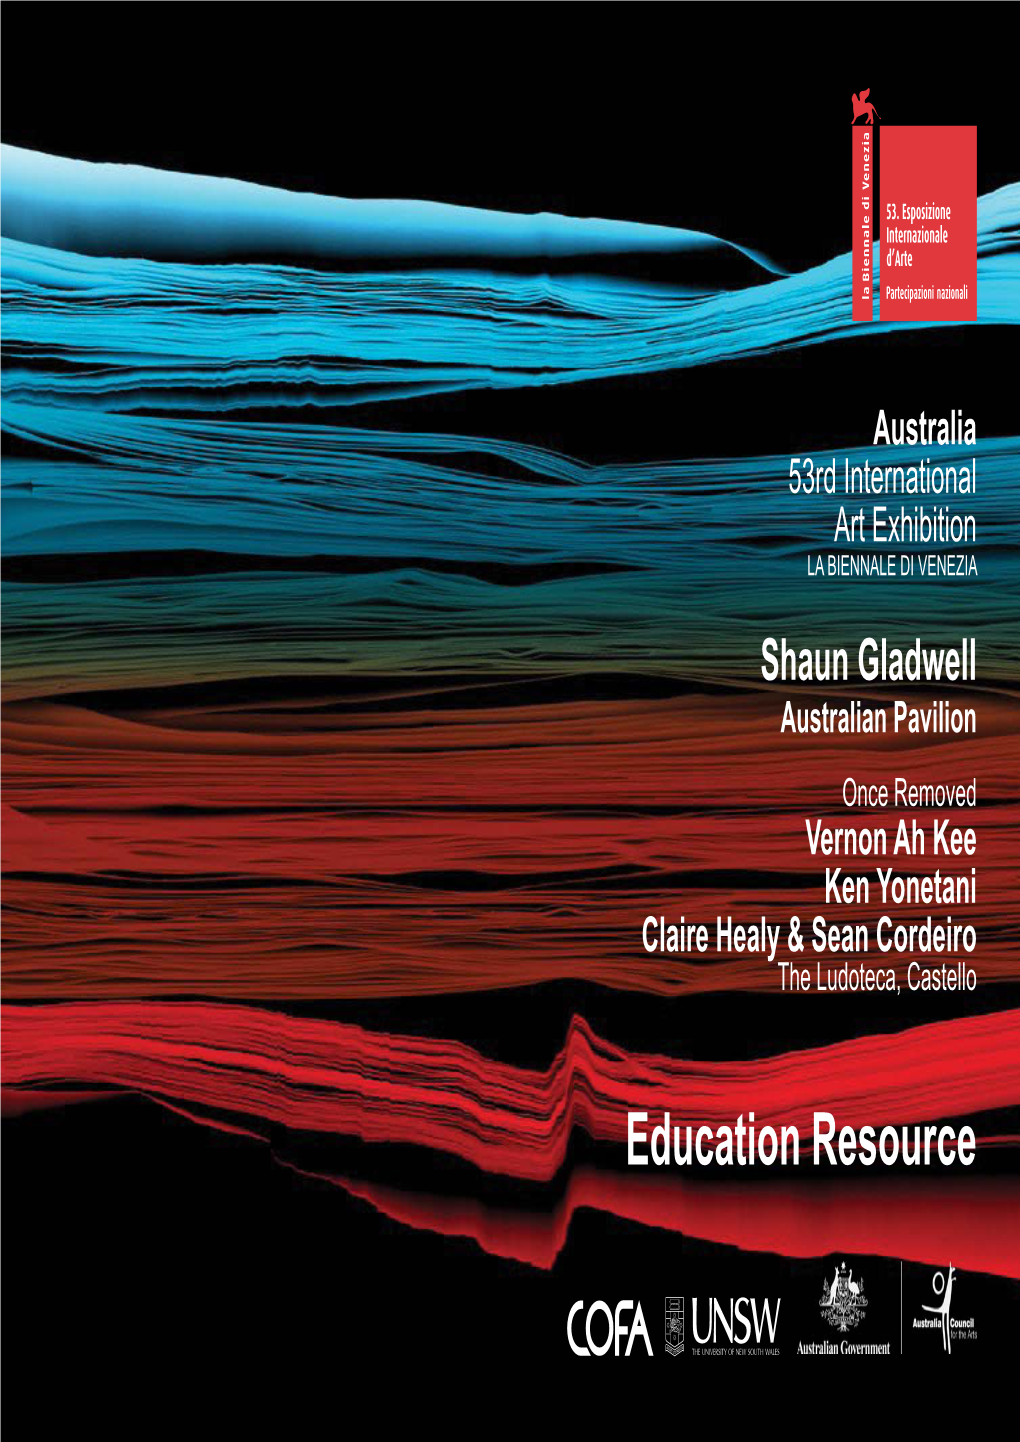 Venice Biennale 2009: Education Resource (Eds: Collins, C, Sudmalis, D, Snepvangers, K and Mcdonald, G)